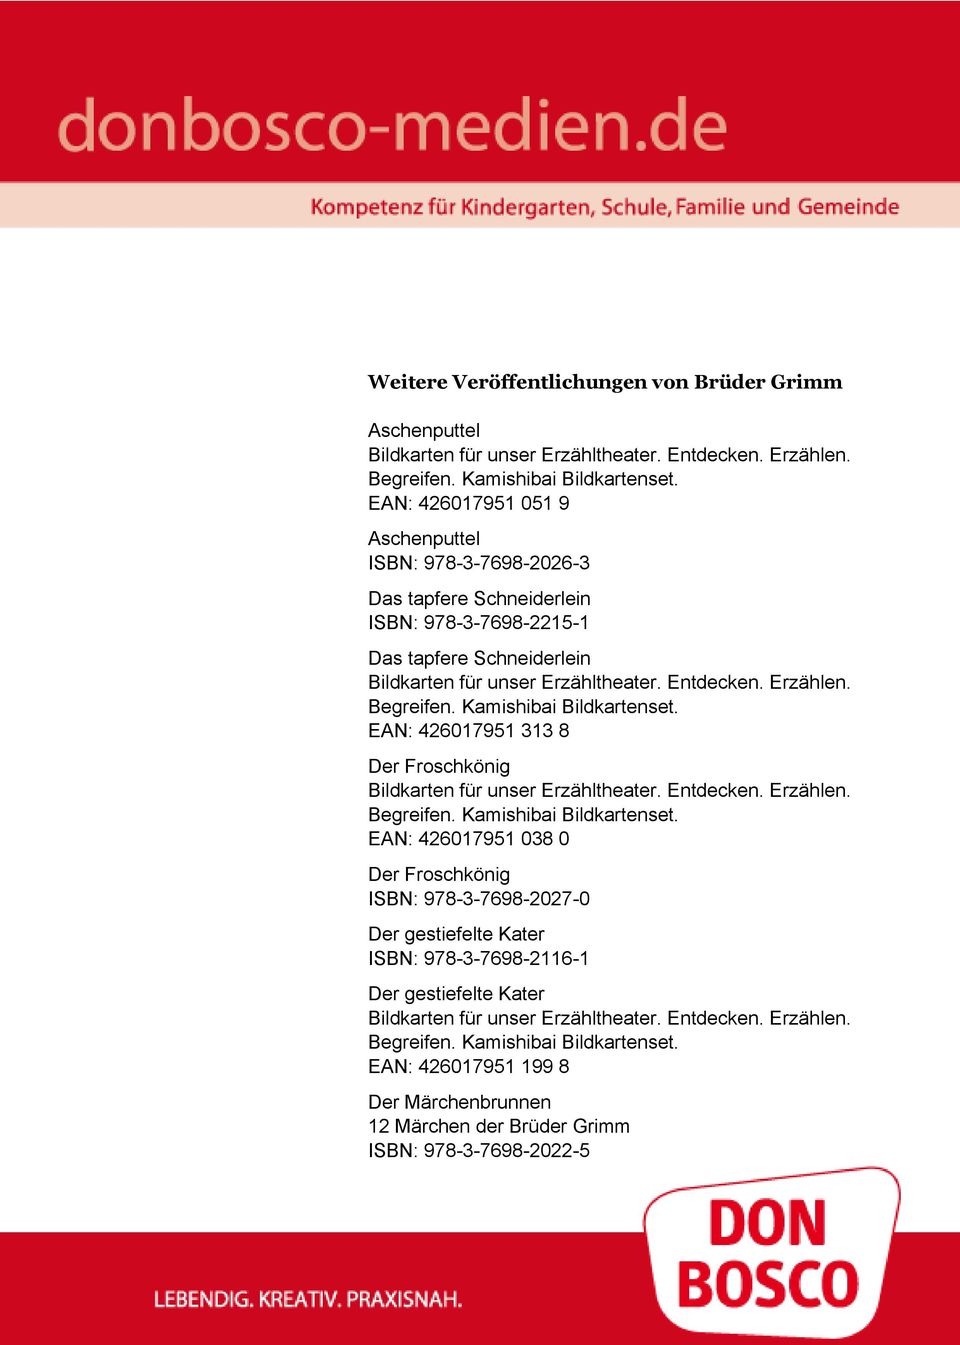 313 8 Der Froschkönig EAN: 426017951 038 0 Der Froschkönig ISBN: 978-3-7698-2027-0 Der gestiefelte Kater ISBN: